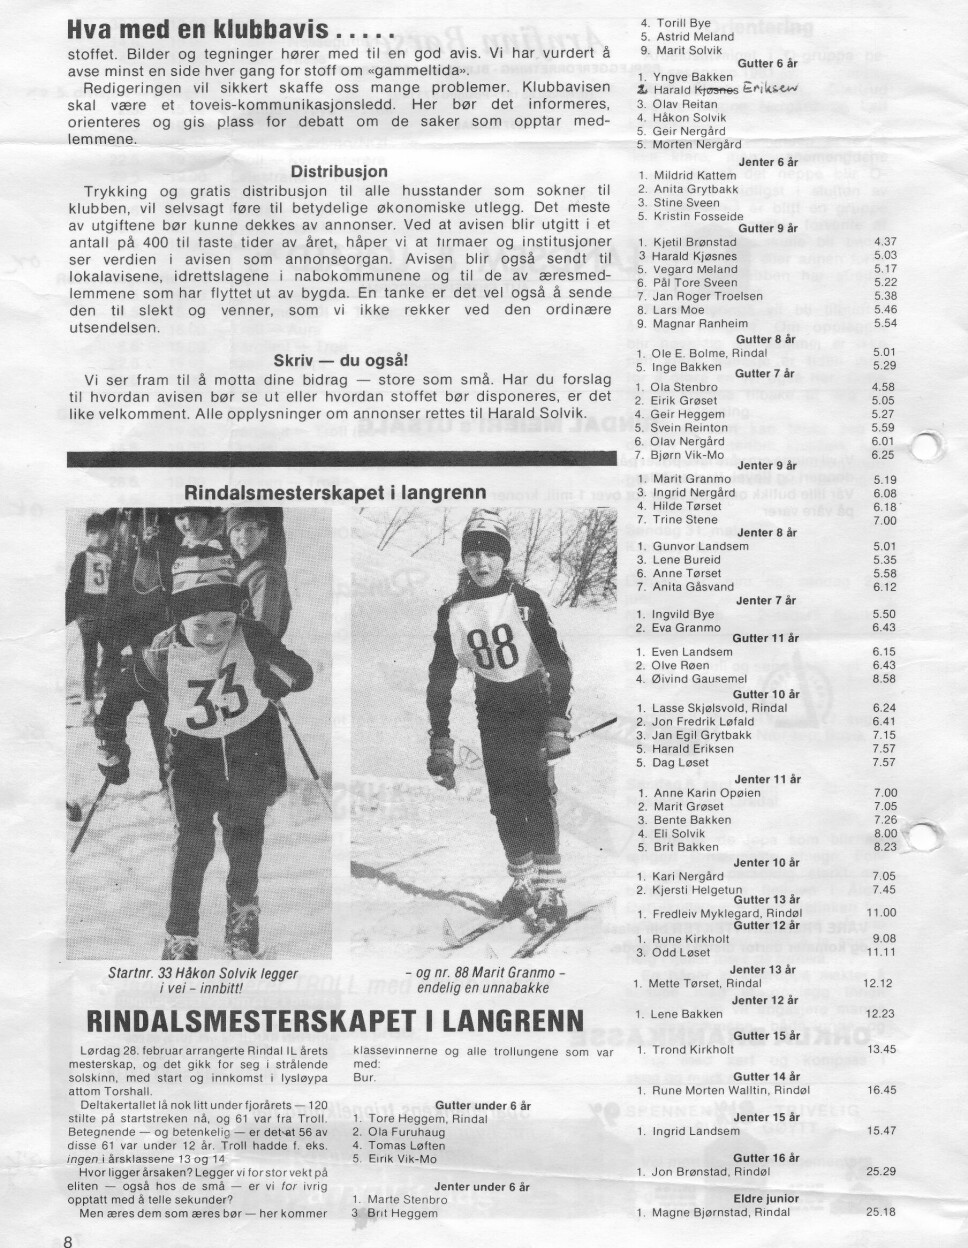 På siste side av den første utgaven av Trollposten, var det resultater fra Rindalsmesterskapet med 'bare' 120 deltagere. Ett navn i klassen 5 år er korrigert, men ikke nok, det skal nok være Kjell Eriksen.